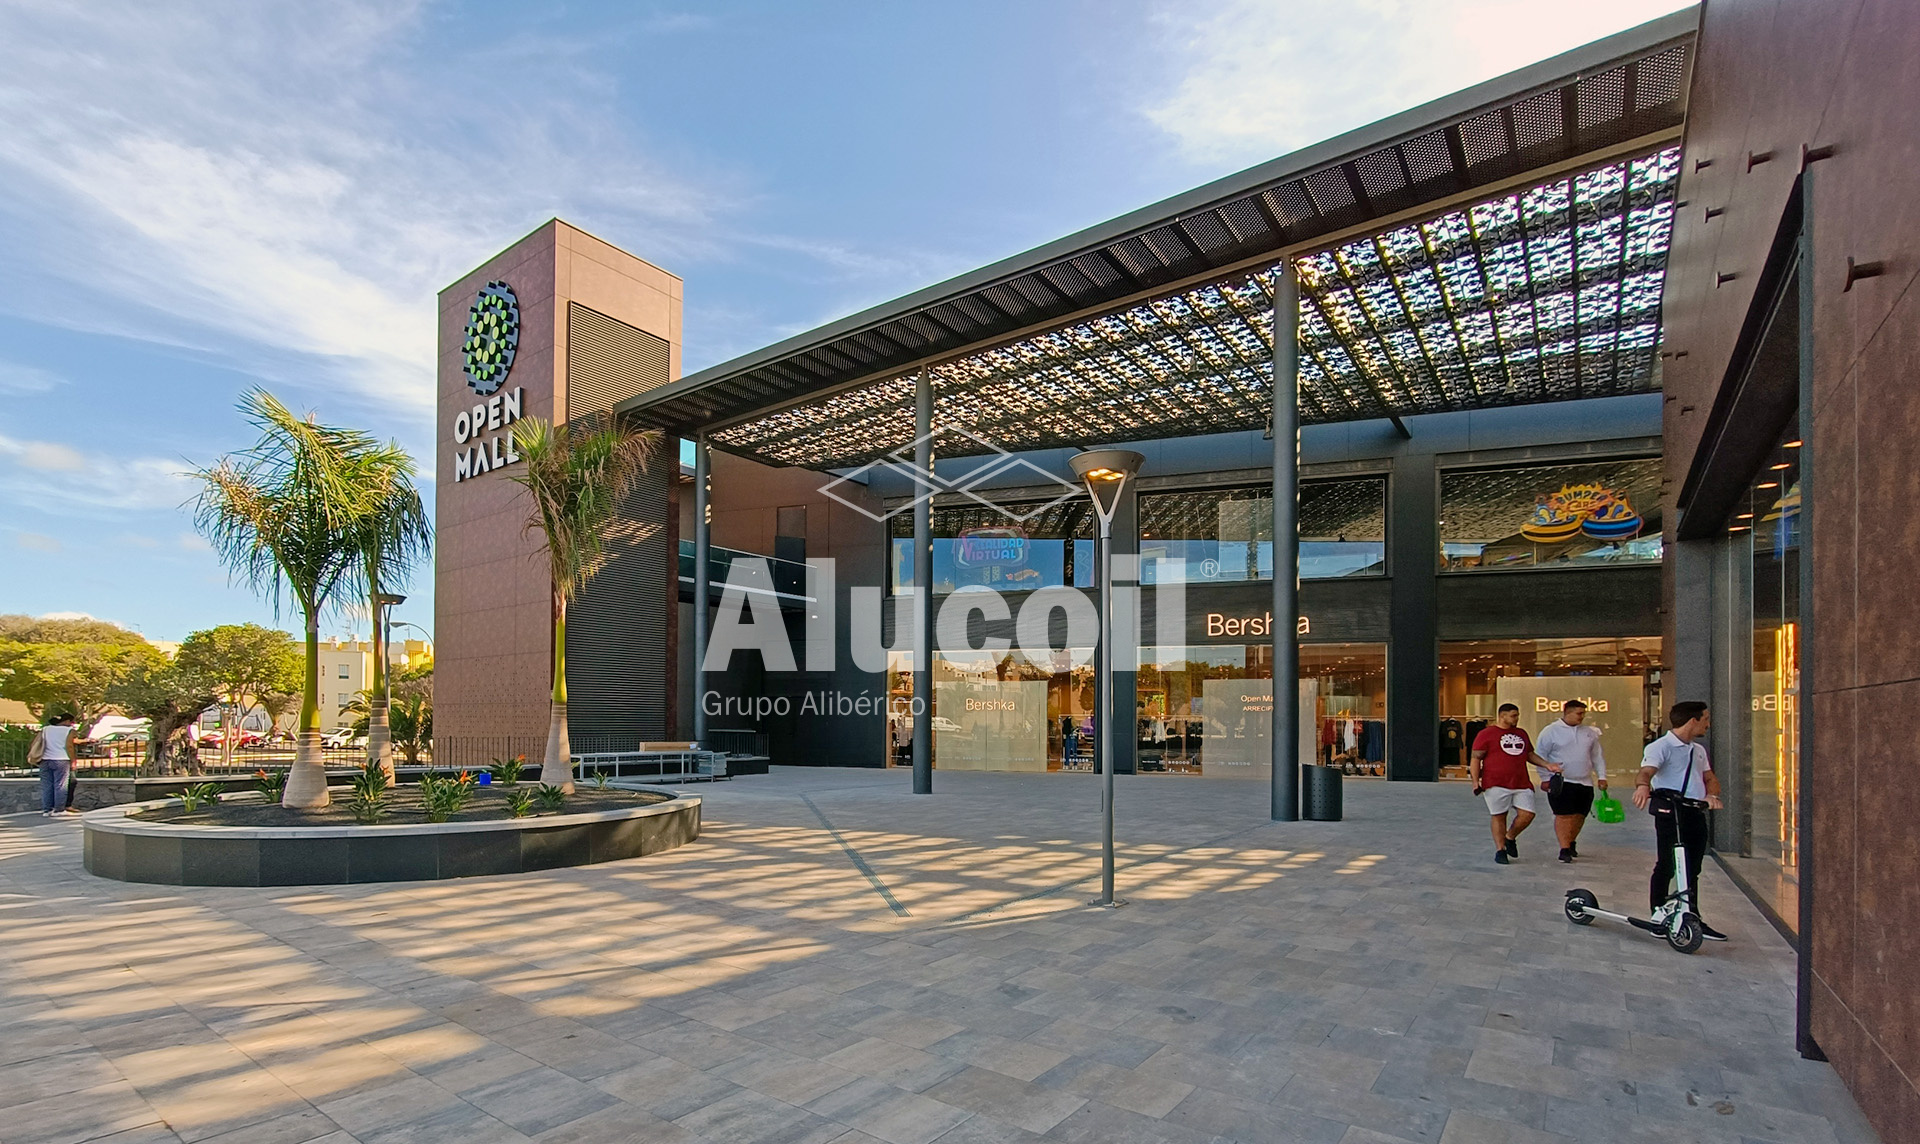 Open Mall Lanzarote Shopping Center